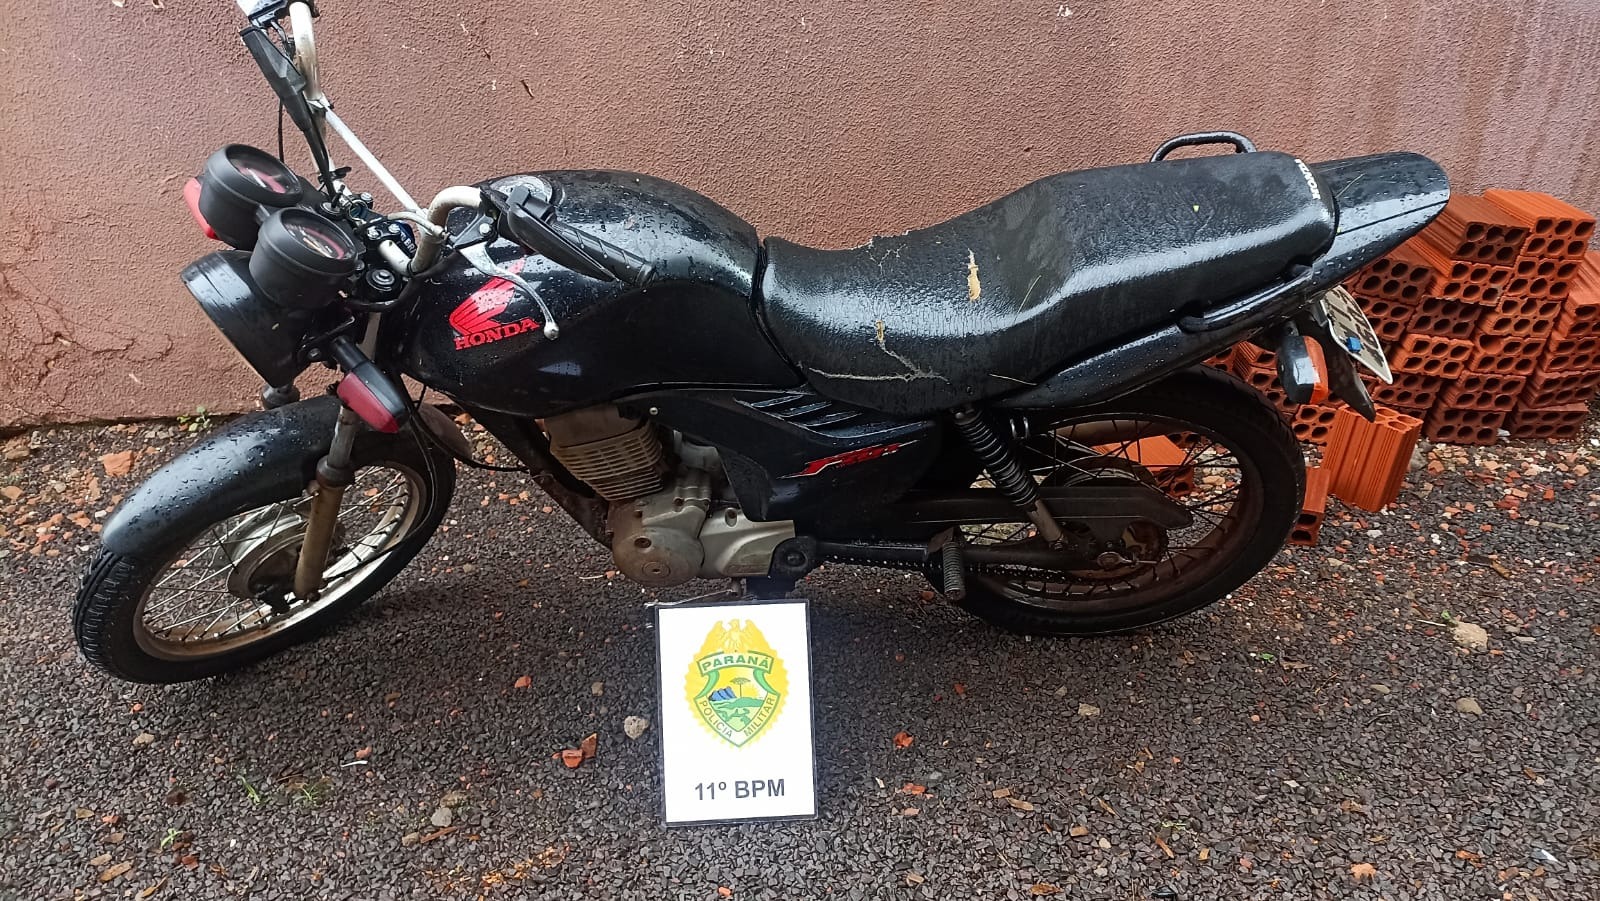 Motocicleta furtada é recuperada pela PM no Jardim Araruama